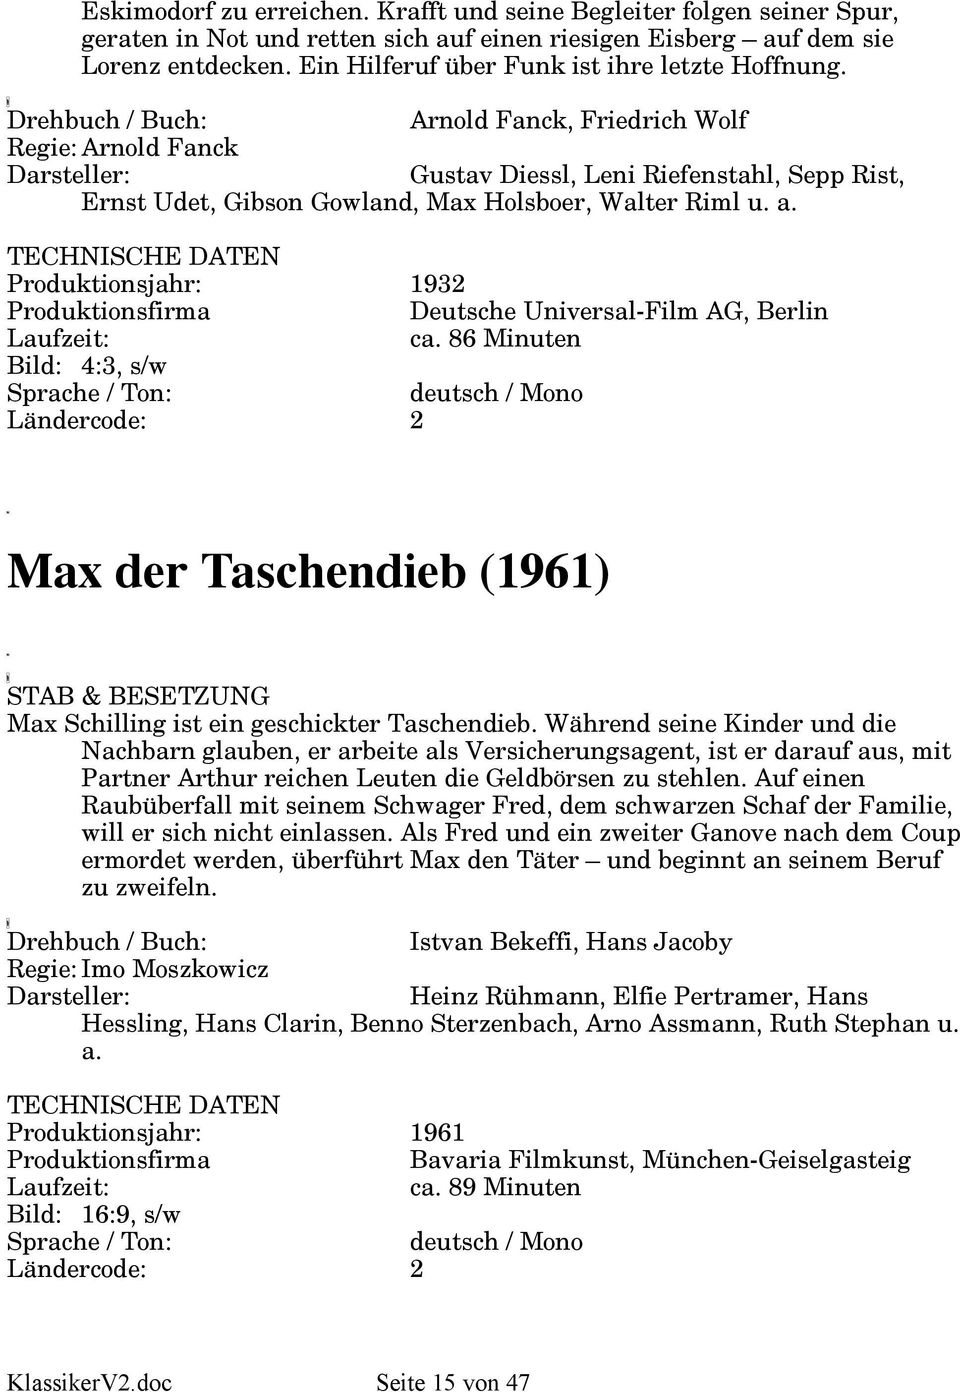 a. Produktionsjahr: 1932 Deutsche Universal-Film AG, Berlin ca. 86 Minuten Bild: 4:3, s/w Max der Taschendieb (1961) Max Schilling ist ein geschickter Taschendieb.